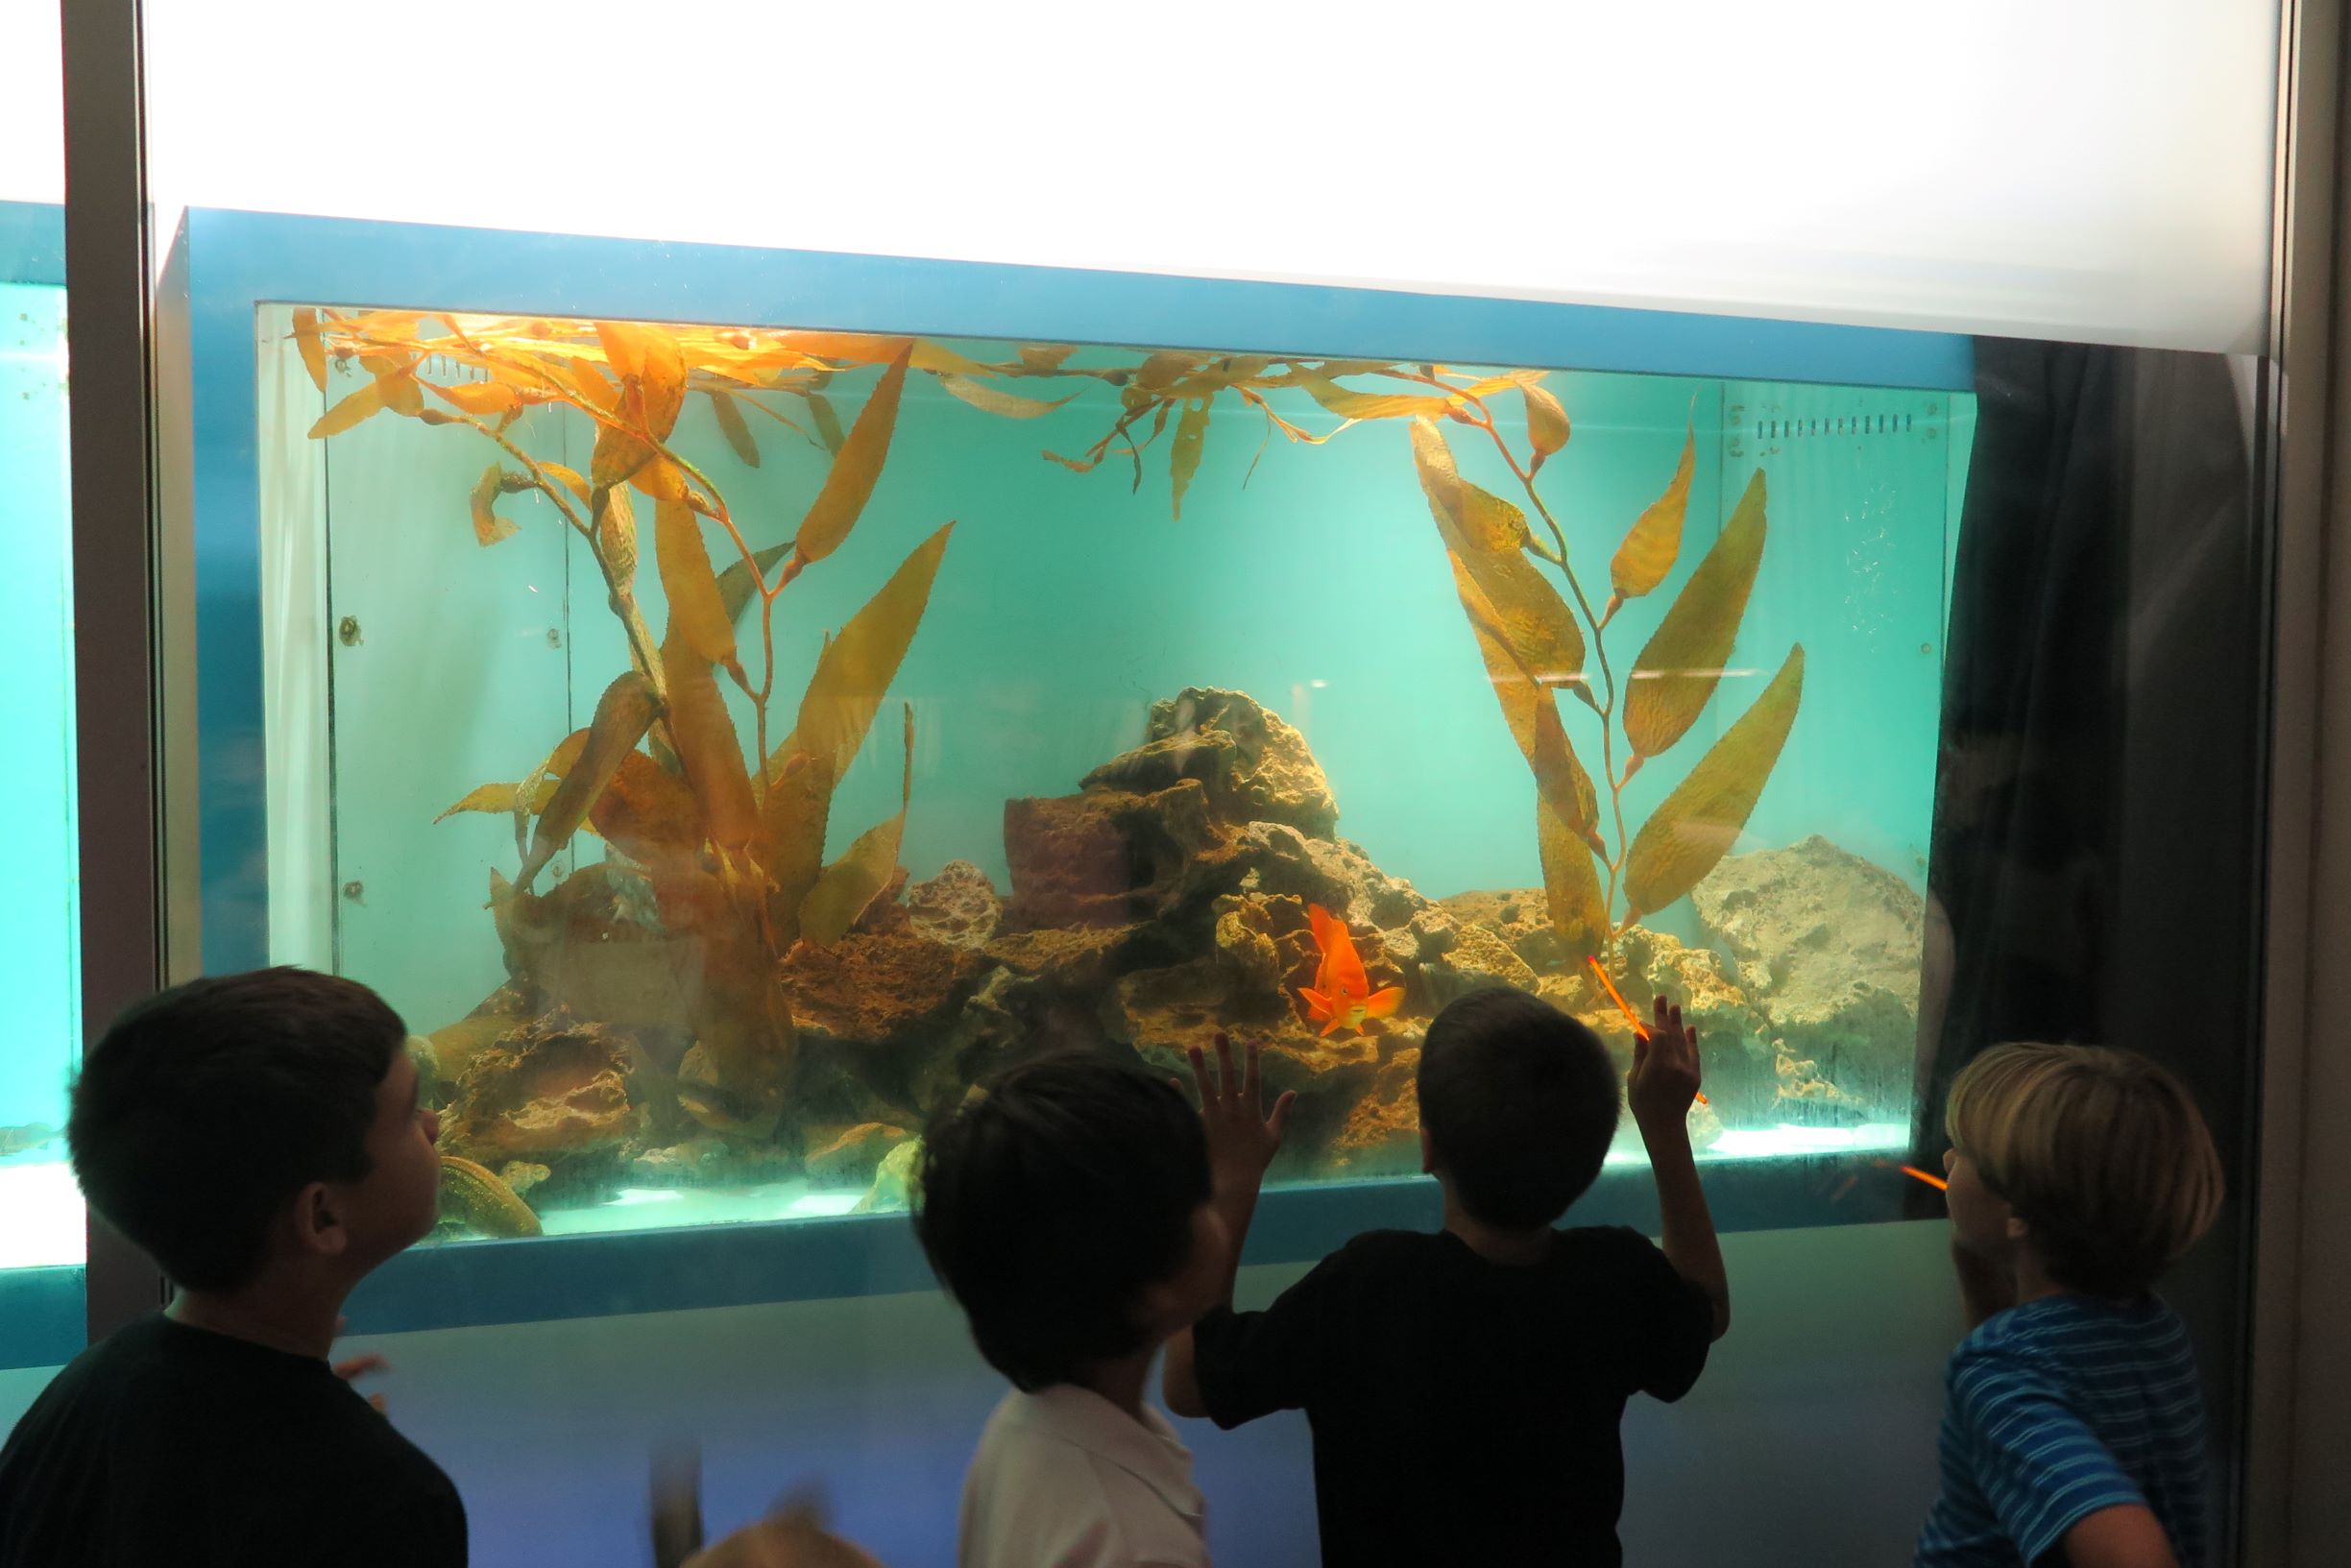 Kids in the aquarium